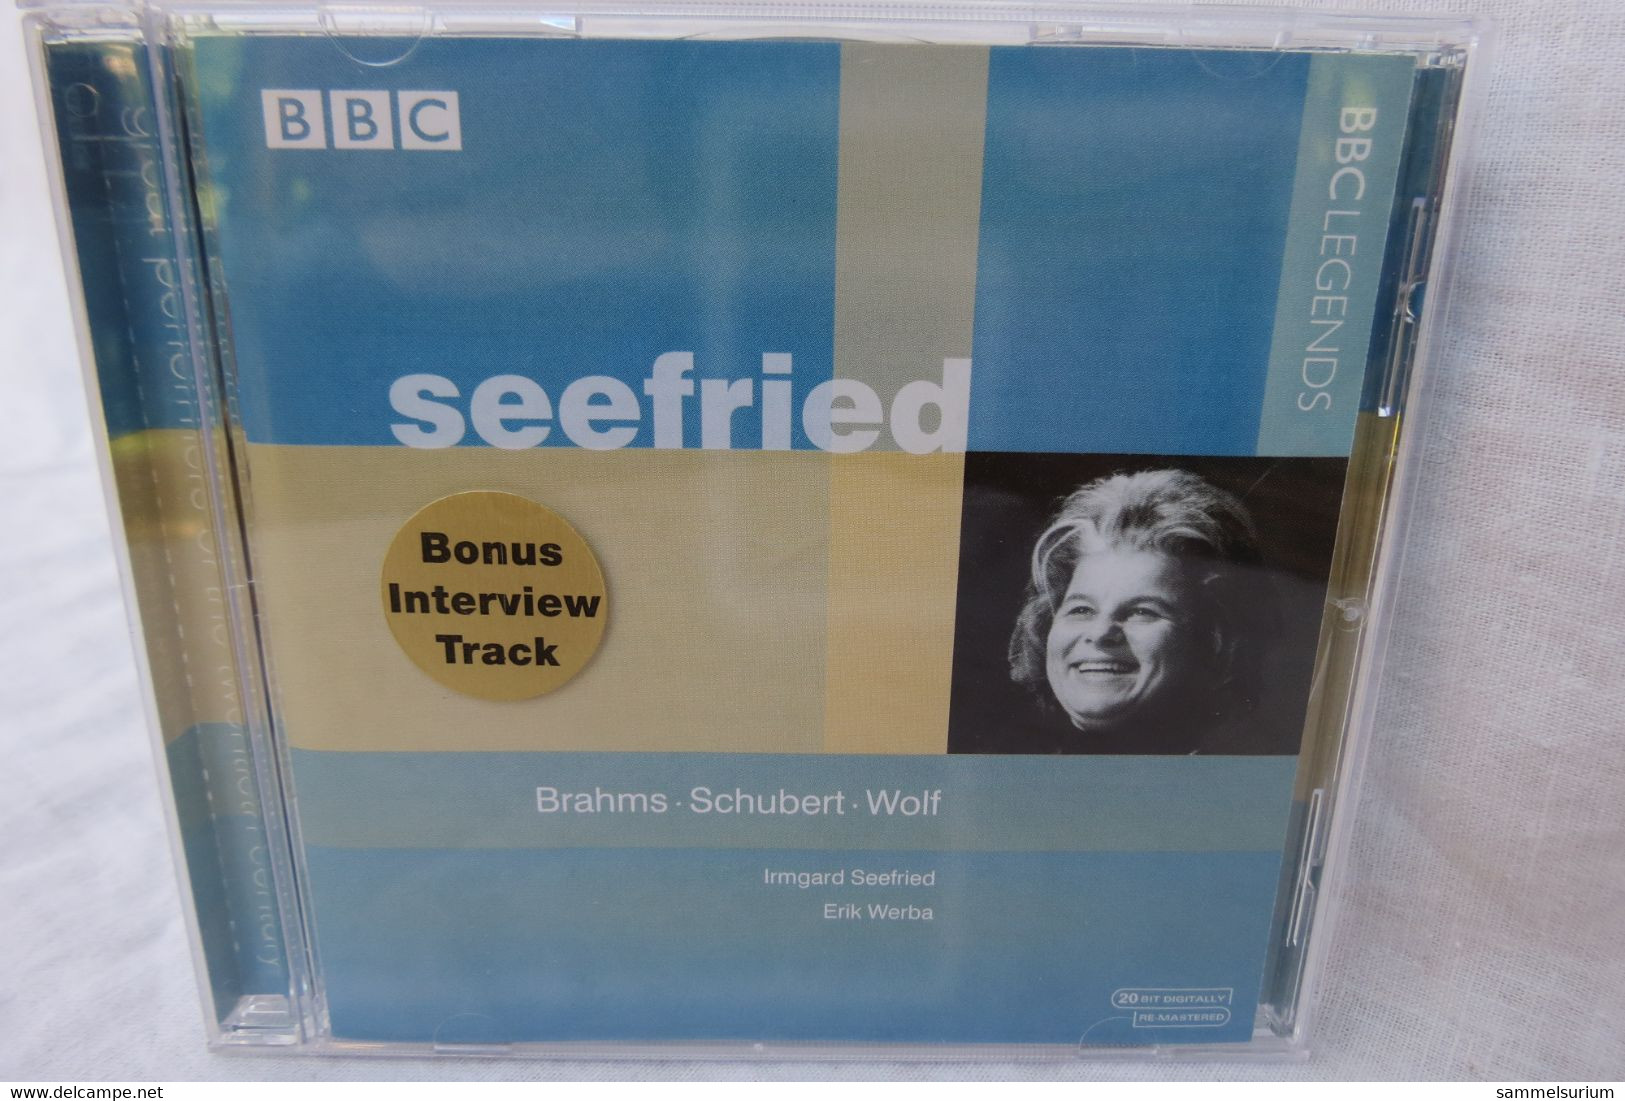 CD "Irmgard Seefried" Brahms, Schubert, Wolf, BBC Legenden - Opéra & Opérette